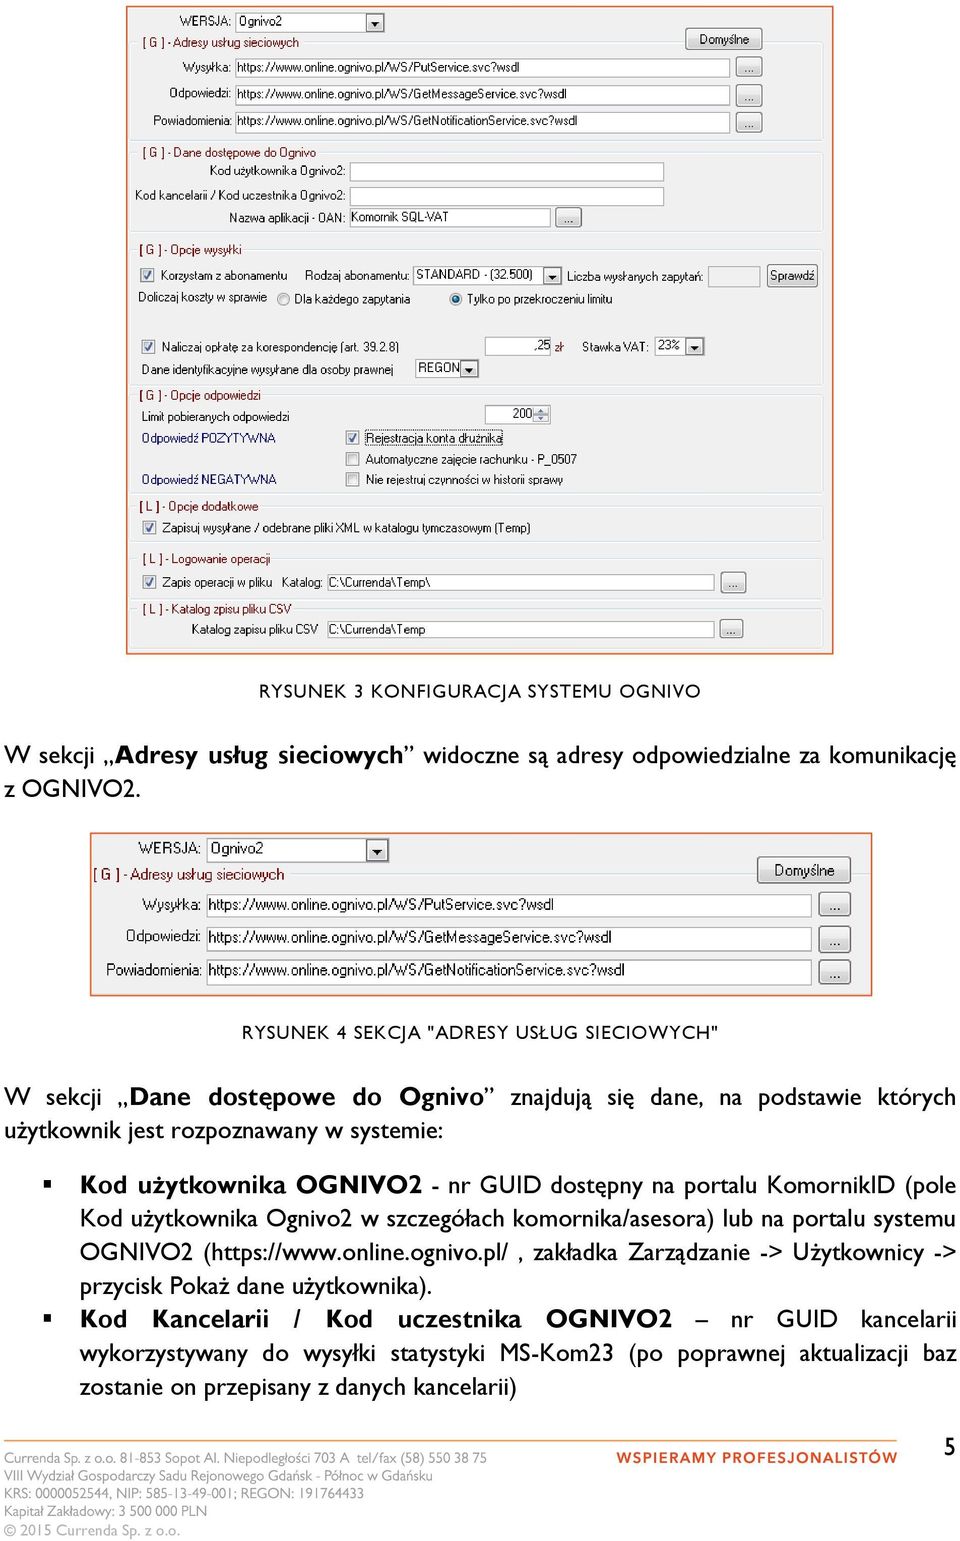 nr GUID dostępny na portalu KomornikID (pole Kod użytkownika Ognivo2 w szczegółach komornika/asesora) lub na portalu systemu OGNIVO2 (https://www.online.ognivo.